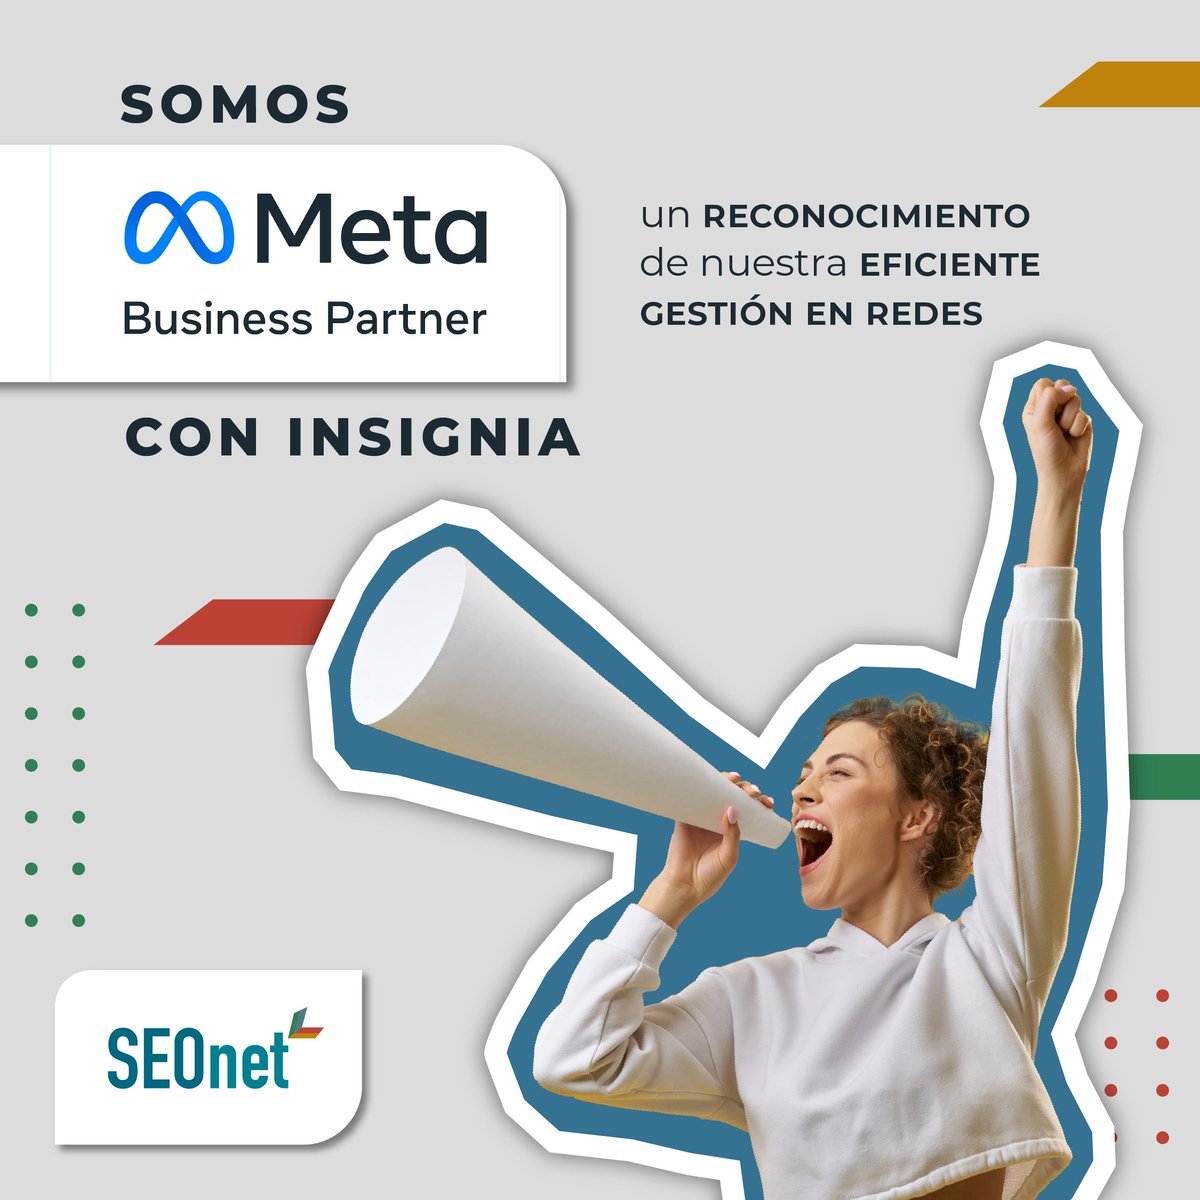 ¡Felices de compartir grandes noticias! #SEOnet ha sido reconocido como #MetaBusinessPartners con Insignia, un honor que destaca nuestra excelencia en el #socialmediamarketing. Este #reconocimiento nos permite apoyo exclusivo fortaleciendo nuestra capacidad para ayudar clientes.